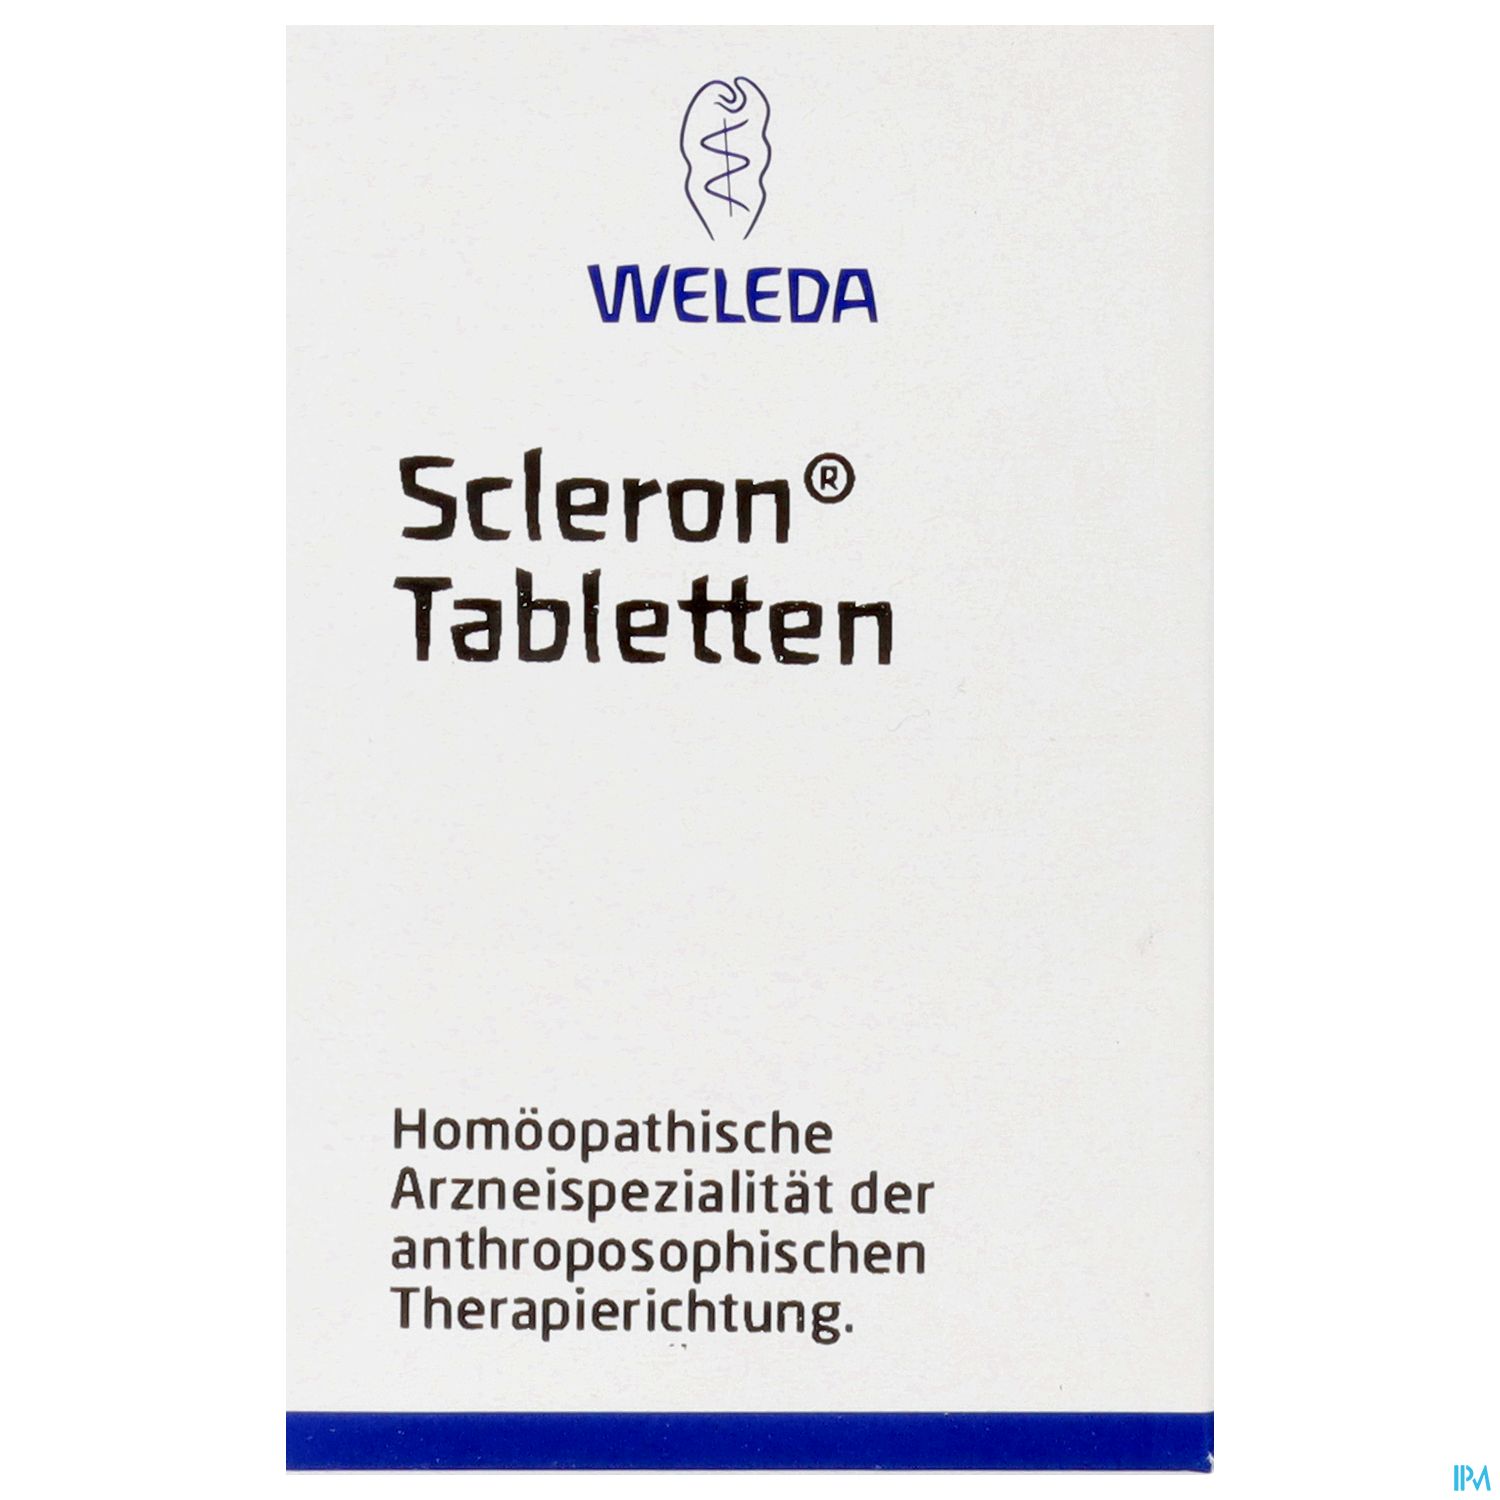 Scleron Tabletten